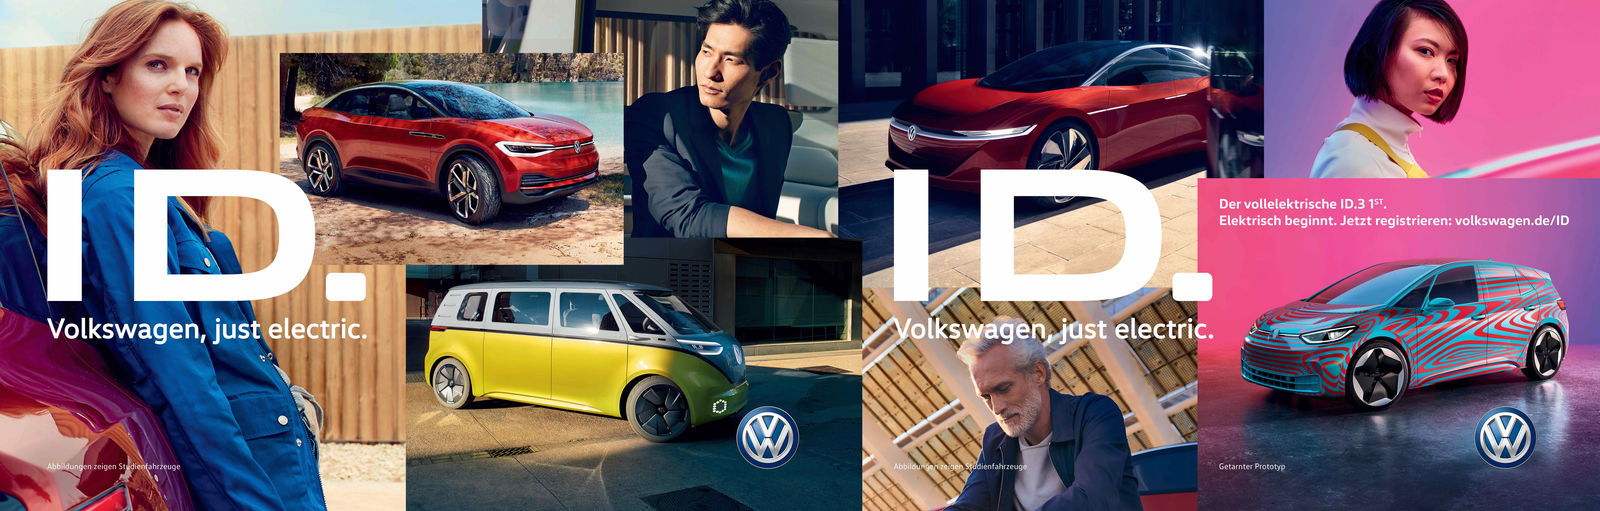 Volkswagen mit internationaler Marketingkampagne zur E-Mobilität